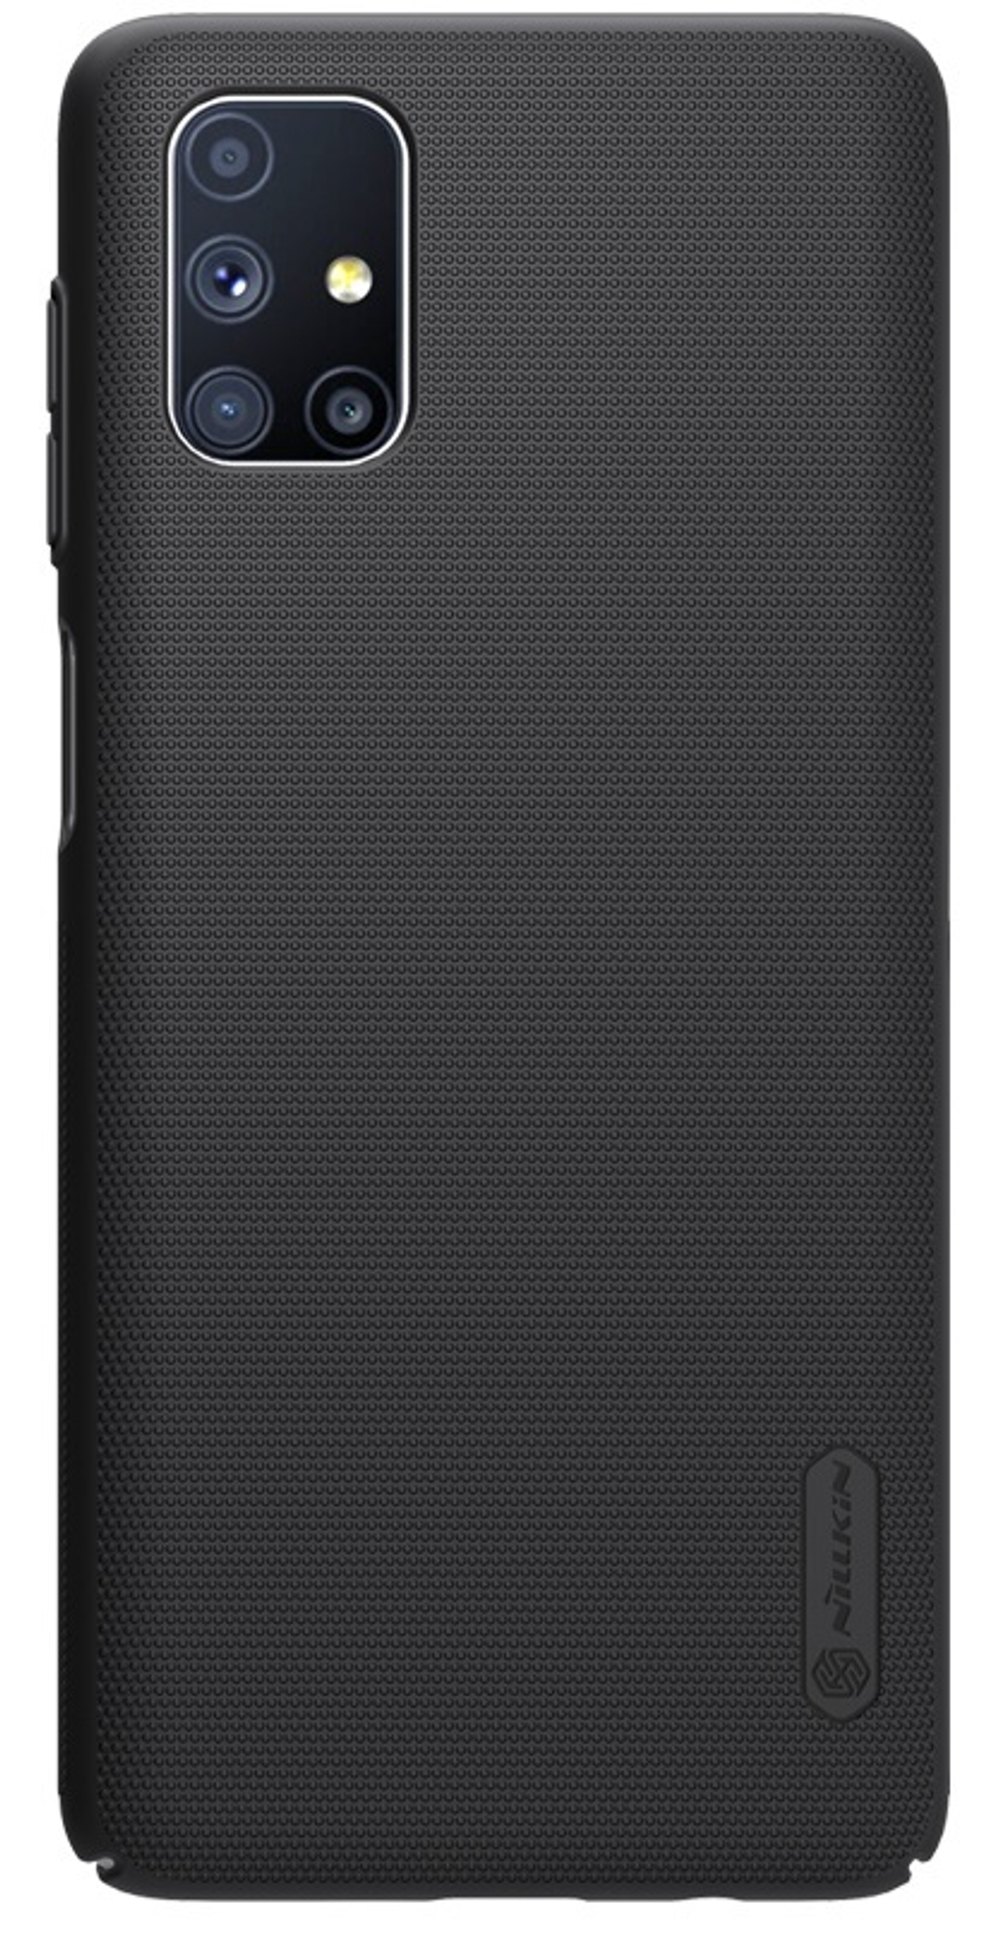 Чехол на Samsung Galaxy M51 от Nillkin серии Super Frosted Shield черного цвета